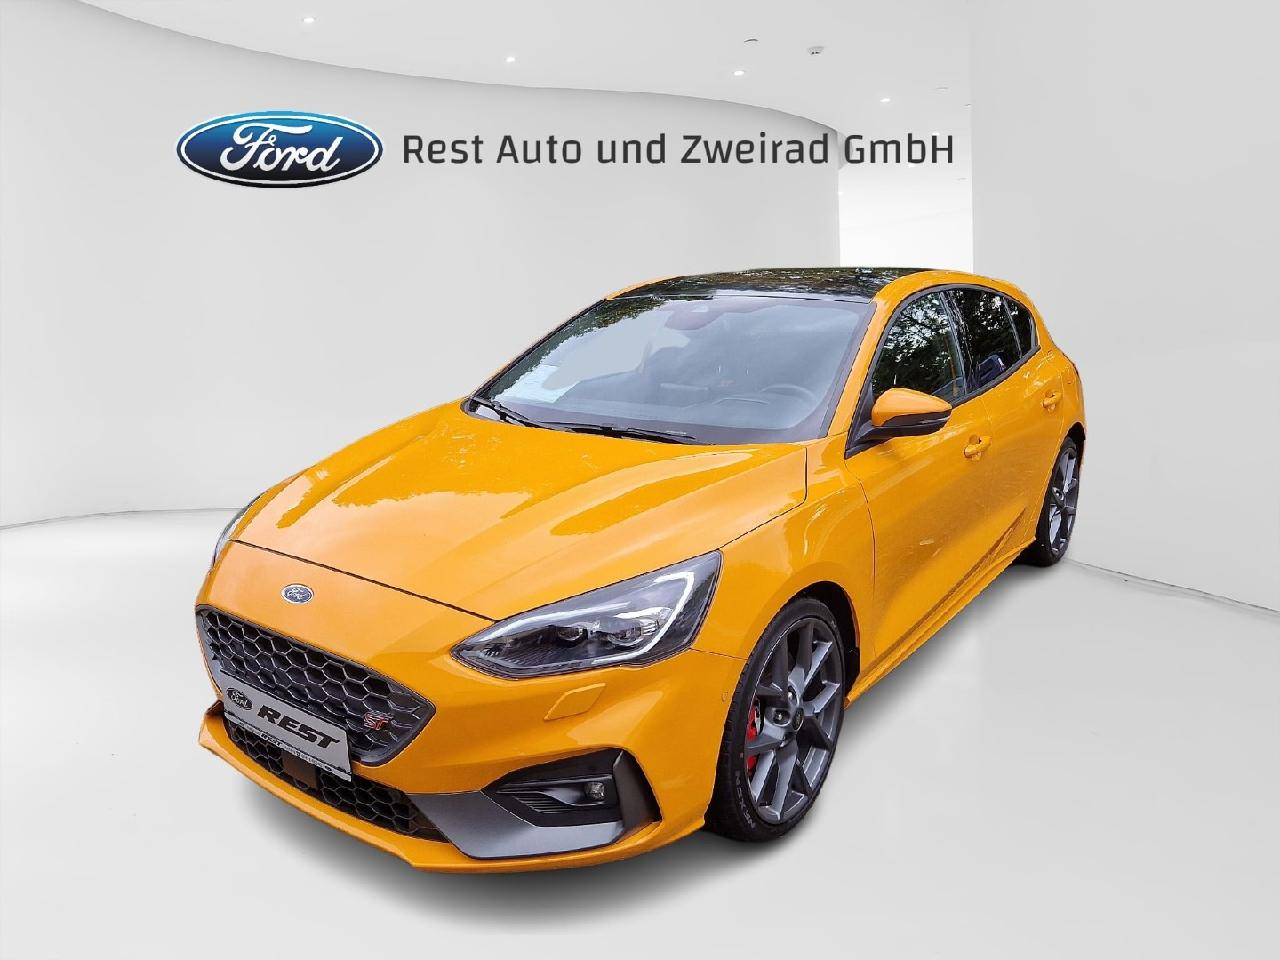 Ford Kfz- & Auto-Zubehör  Rest Auto und Zweirad GmbH Achern